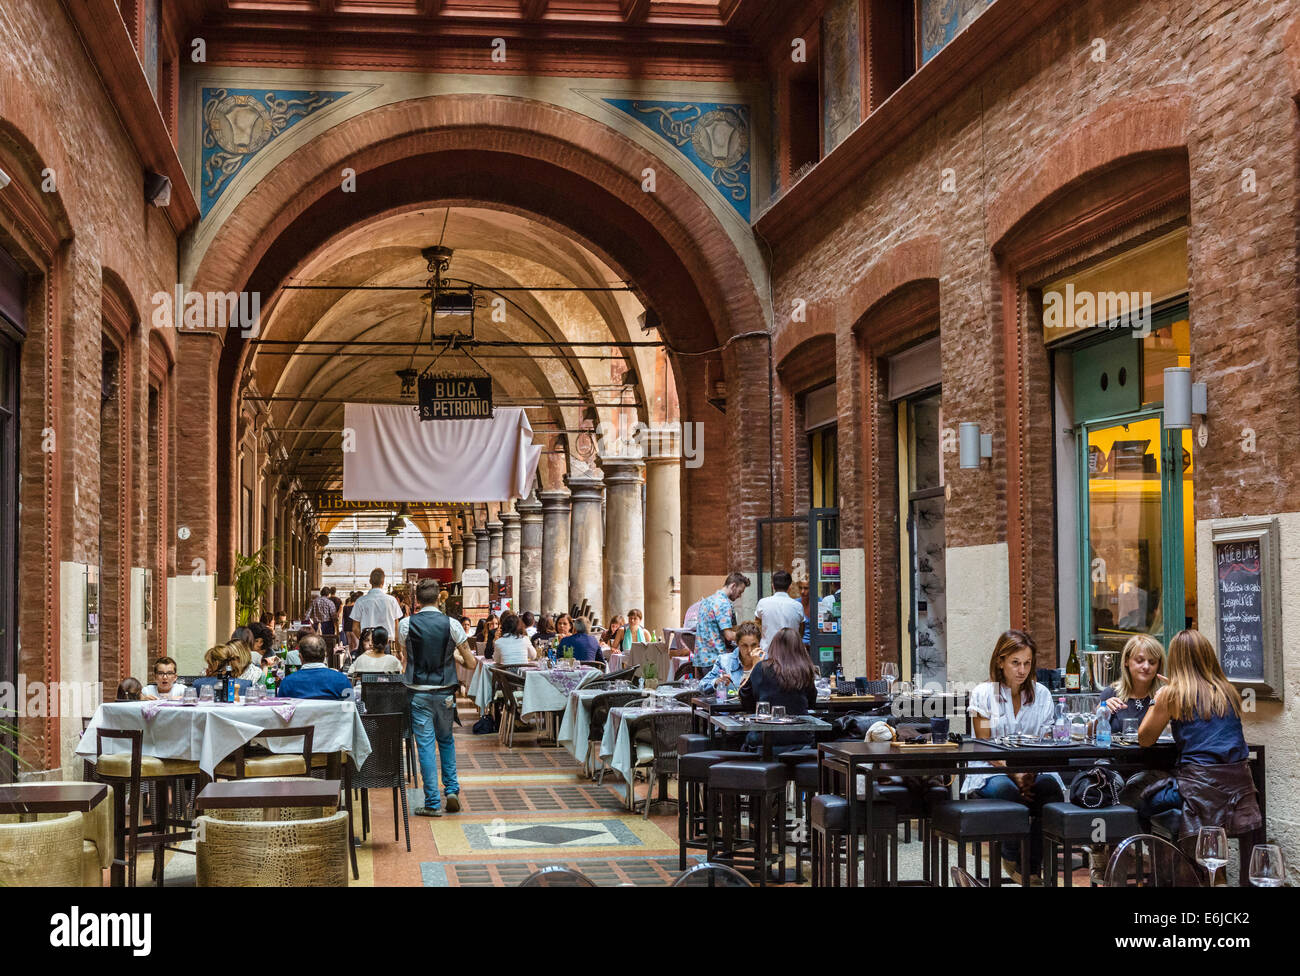 Buca San Petronio restaurant in a portico by the basilica in Piazza Maggiore, Bologna, Emilia Romagna, Italy Stock Photo